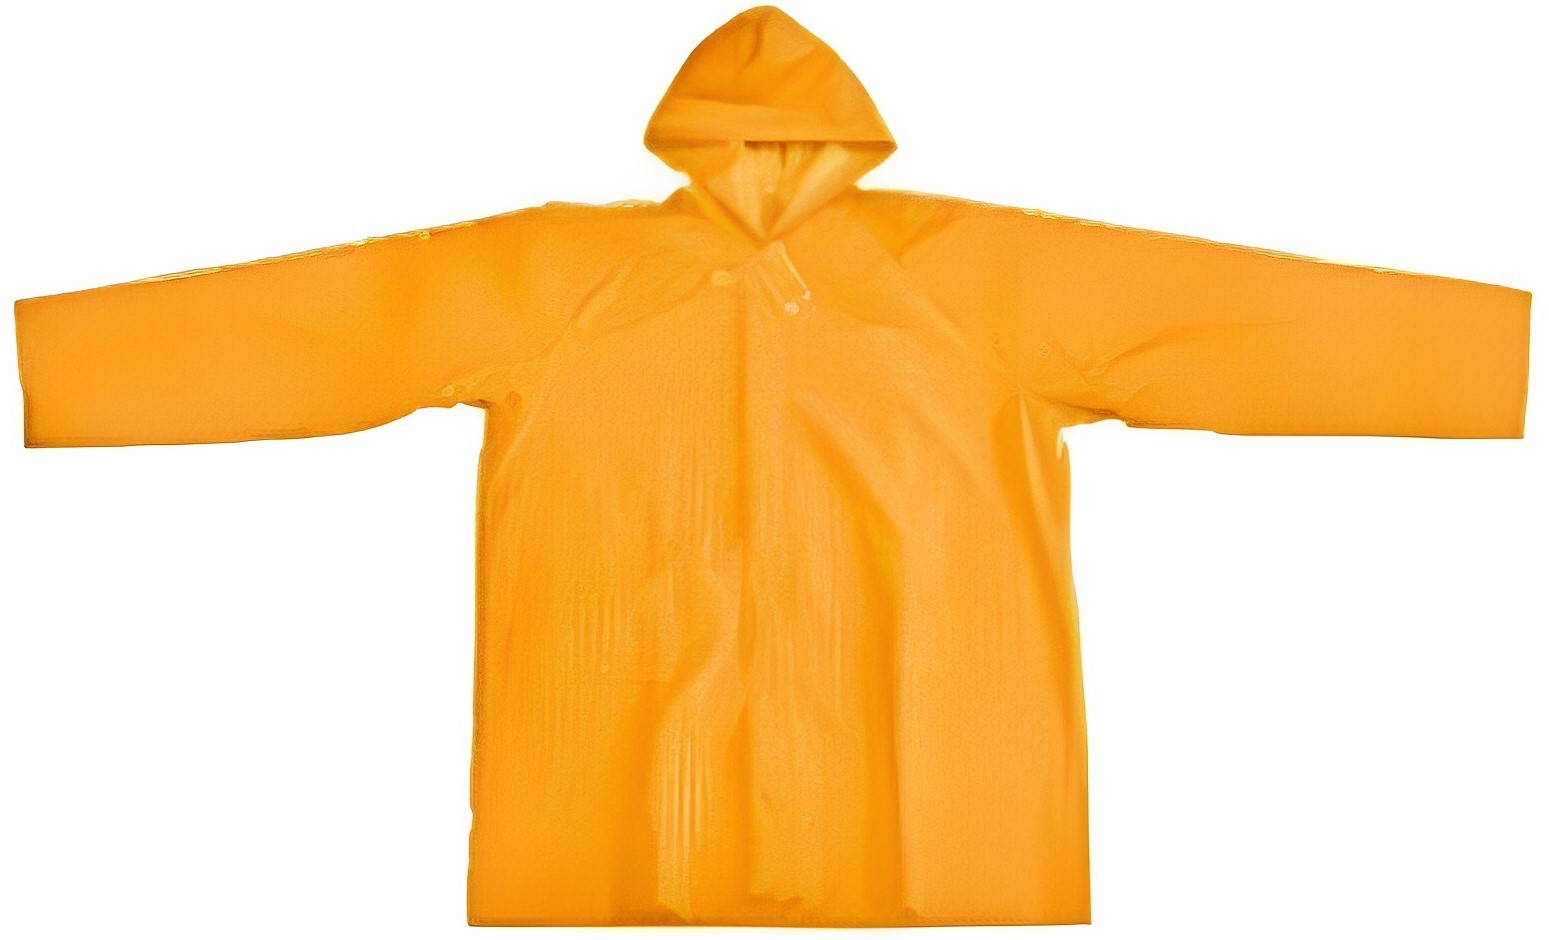 Hình ảnh 3 của mặt hàng Bộ đồ áo mưa bảo hộ có mũ cộc tay size XL Tolsen 45198